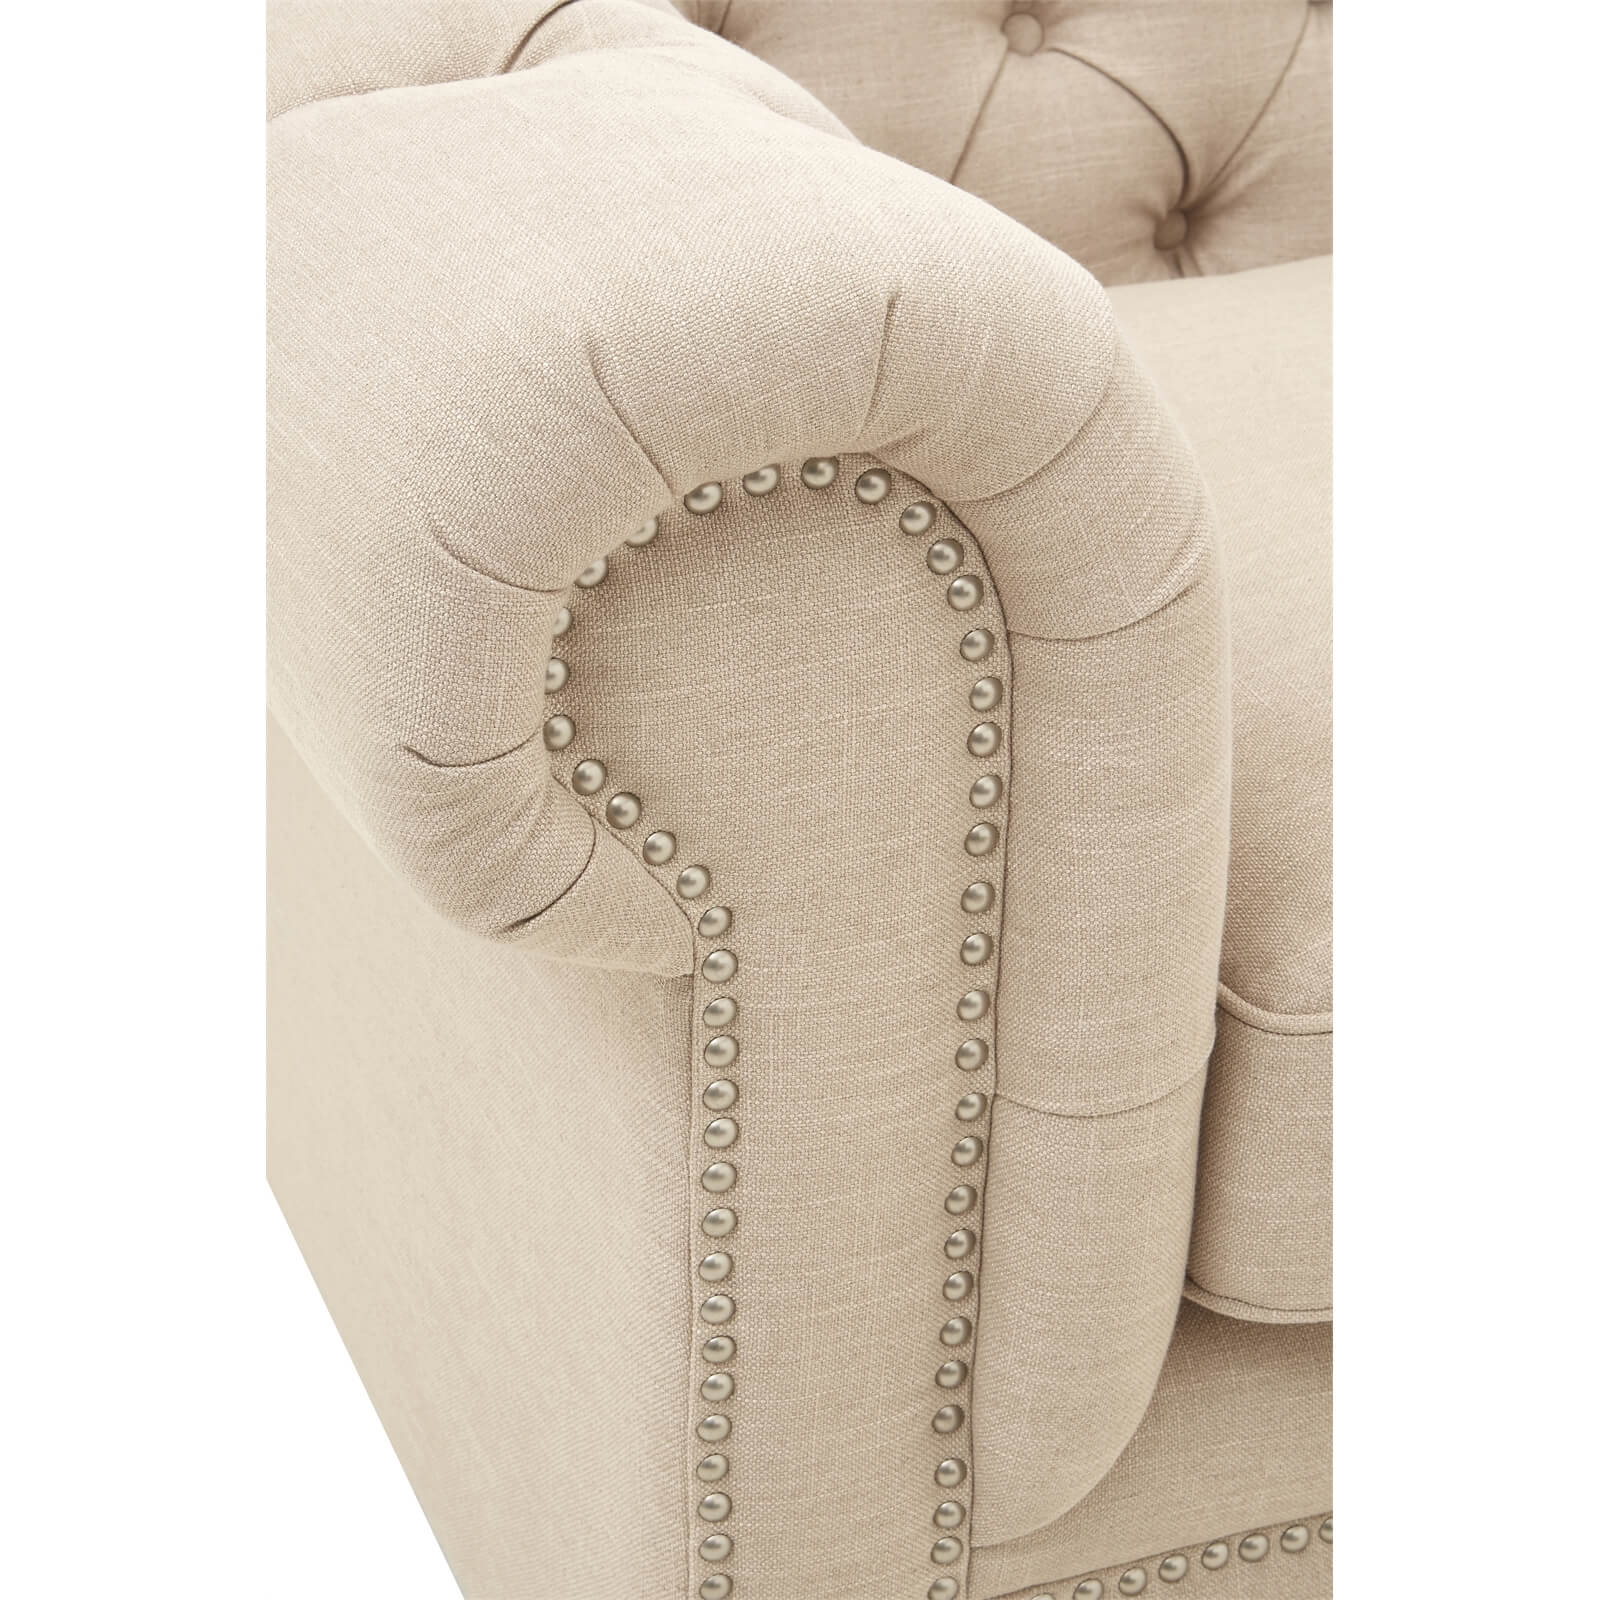 Stella 2 Seater Linen Sofa - Beige